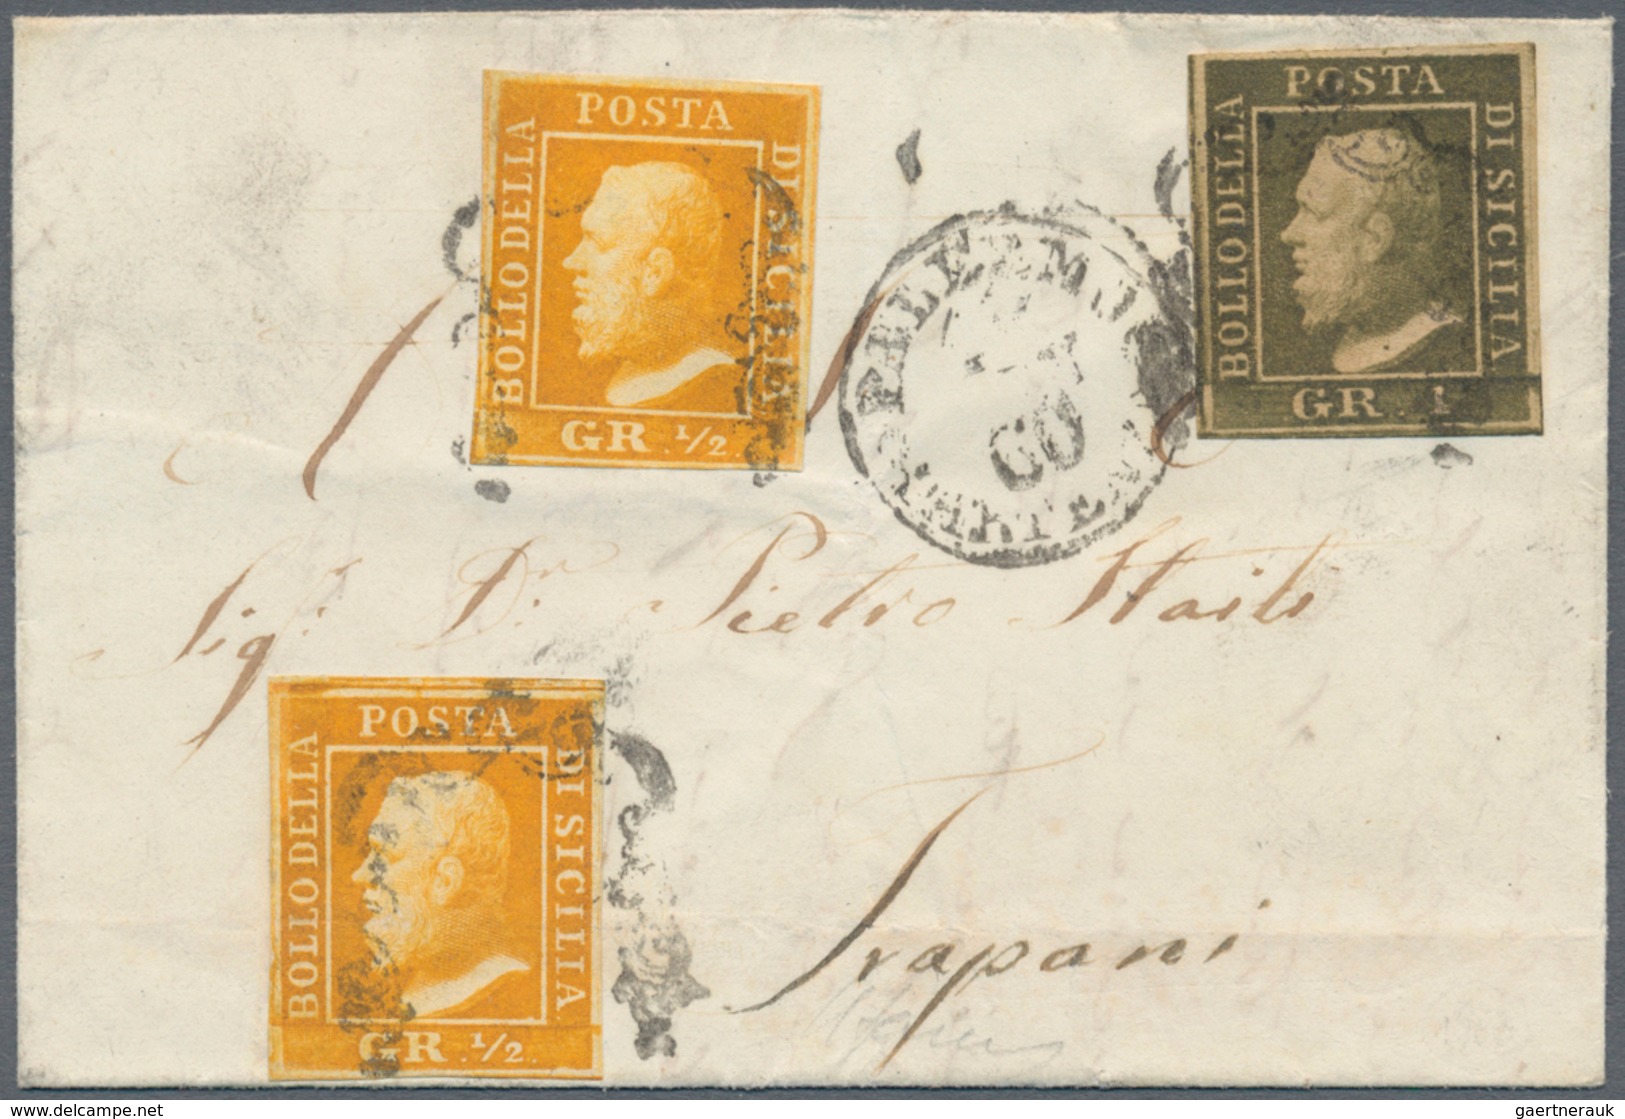 Italien - Altitalienische Staaten: Sizilien: 1859, 1/2 Grano, Second Plate, Orange, Palermo Paper, T - Sicilia